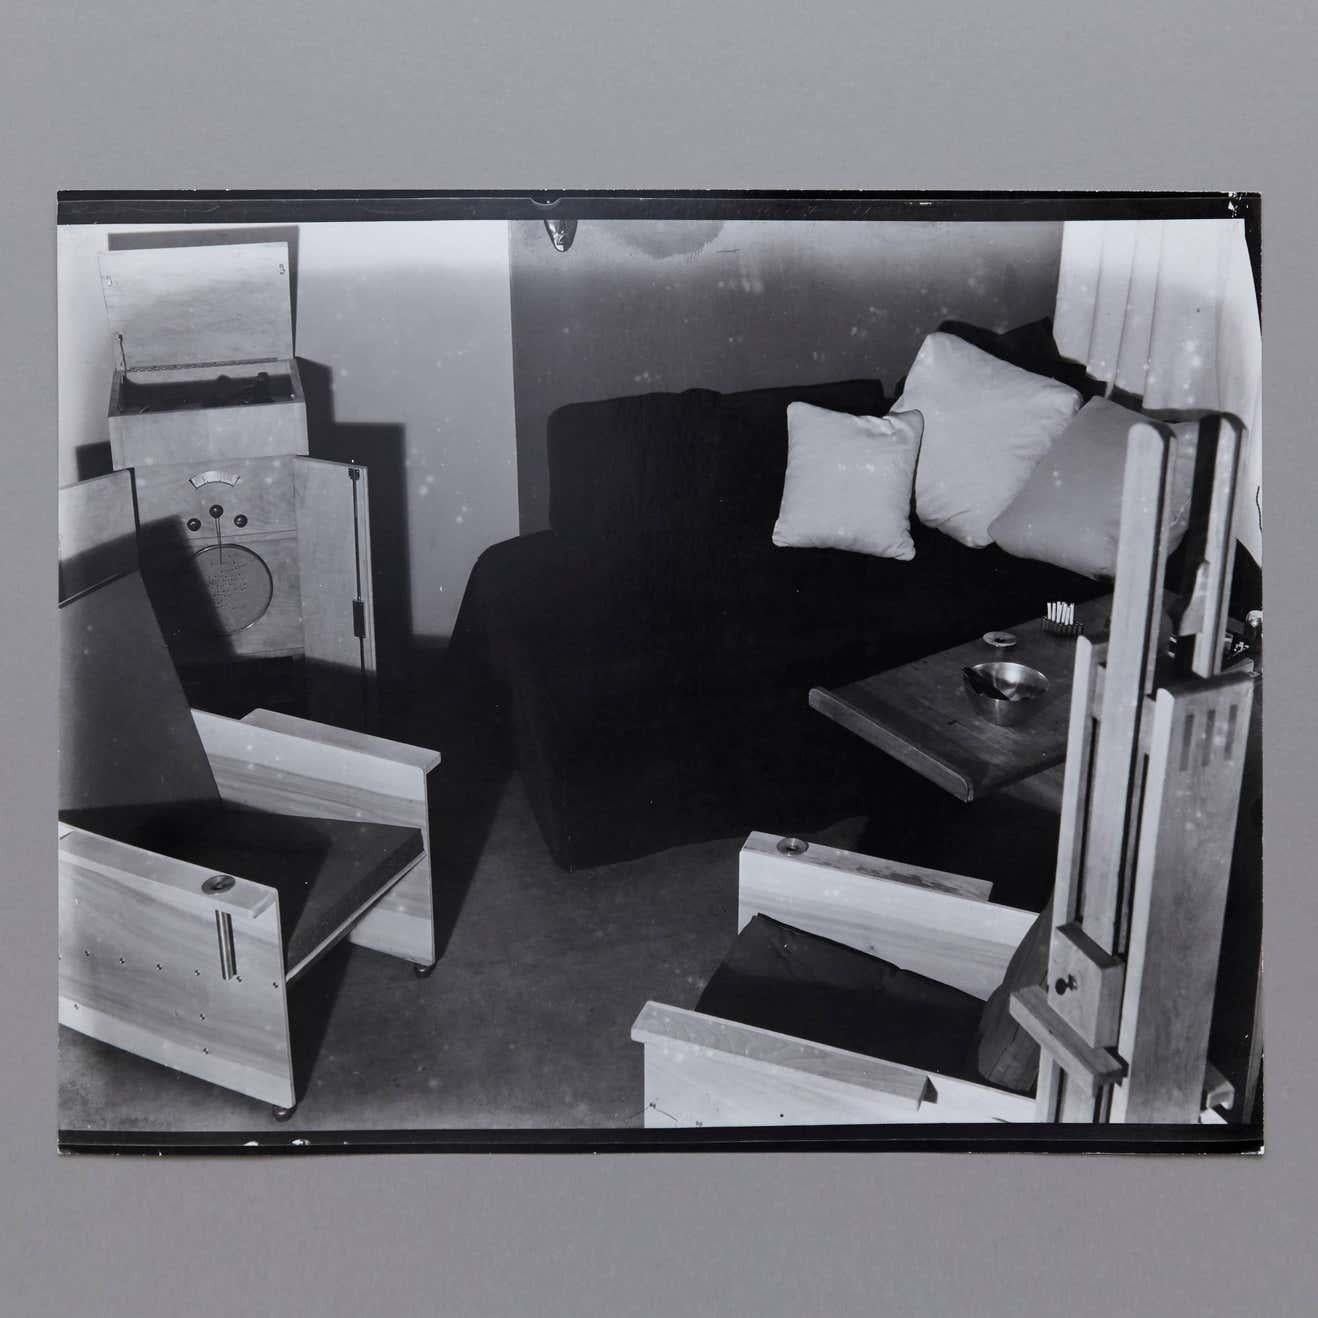 Man Ray Studio, fotografiert von Man Ray.

Ein posthumer Abzug vom Originalnegativ um 1970 von Pierre Gassmann. Gelatinesilberbromid.

Geboren (Philadelphia, 1890 - Paris, 1976) als Emmanuel Radnitzky, nahm Man Ray 1909 sein Pseudonym an und